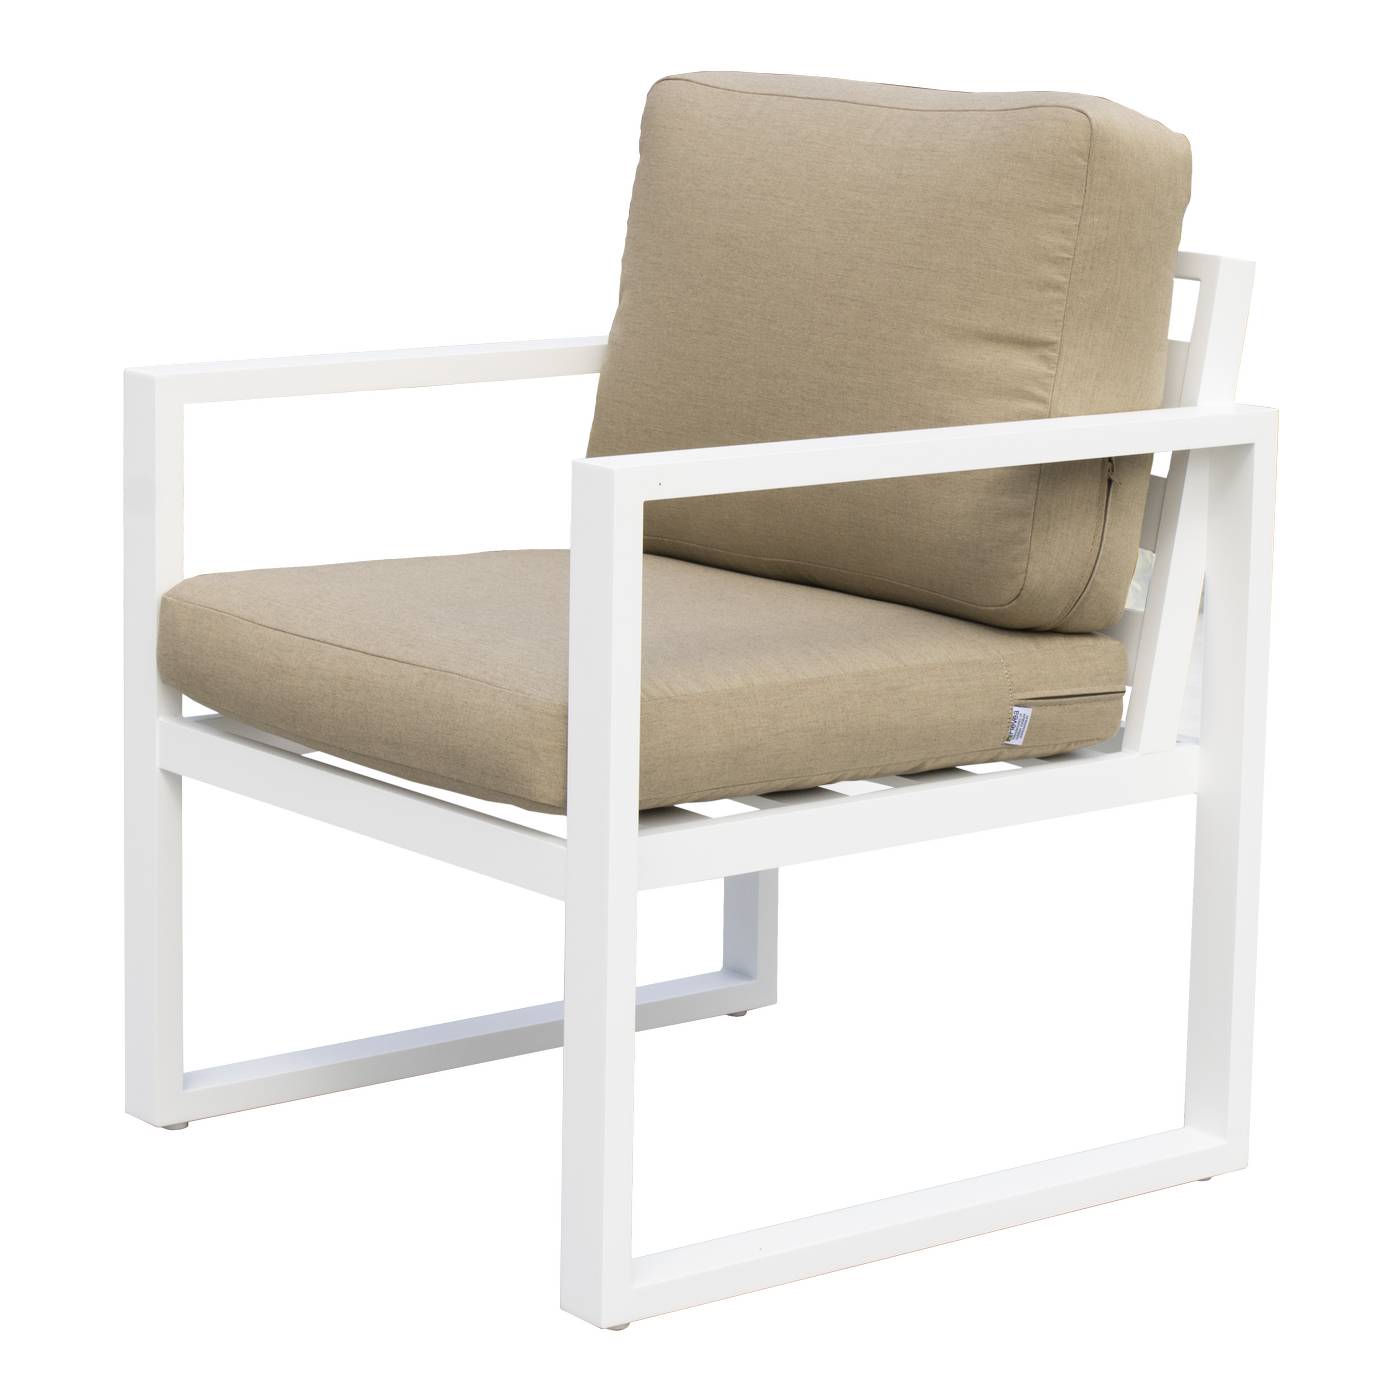 Sofá 2p + sillones + taburetes de aluminio [Fenix] - Conjunto de aluminio para jardín: 1 sofá 2 plazas + 2 sillones + 1 mesa de centro + 2 reposapiés. Disponible en cinco colores diferentes.